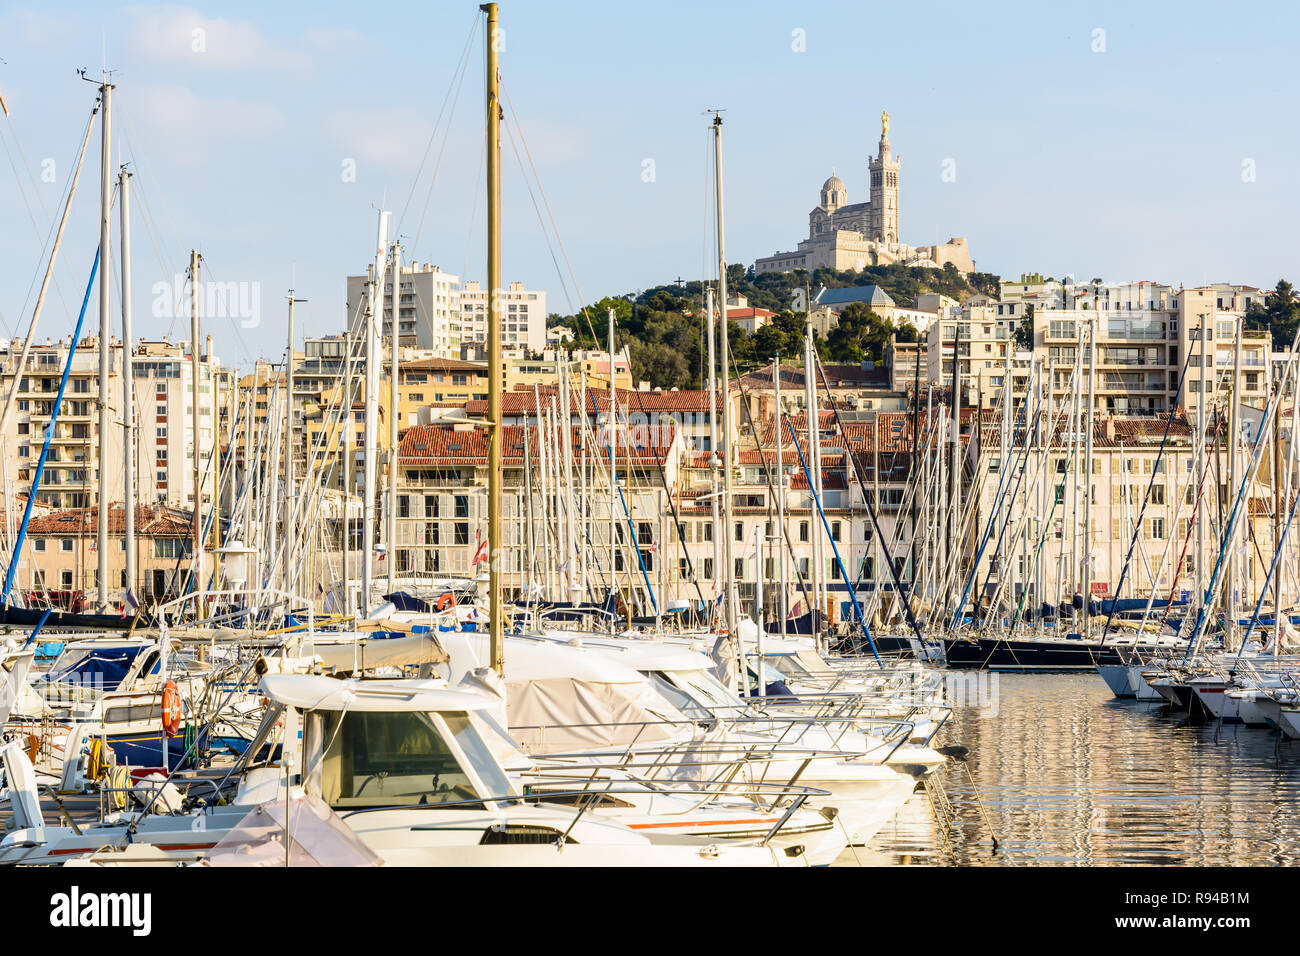 Les bateaux de plaisance amarrés dans le port de plaisance du Vieux Port de Marseille, France, avec la basilique Notre-Dame de la garde en haut de la colline au coucher du soleil. Banque D'Images